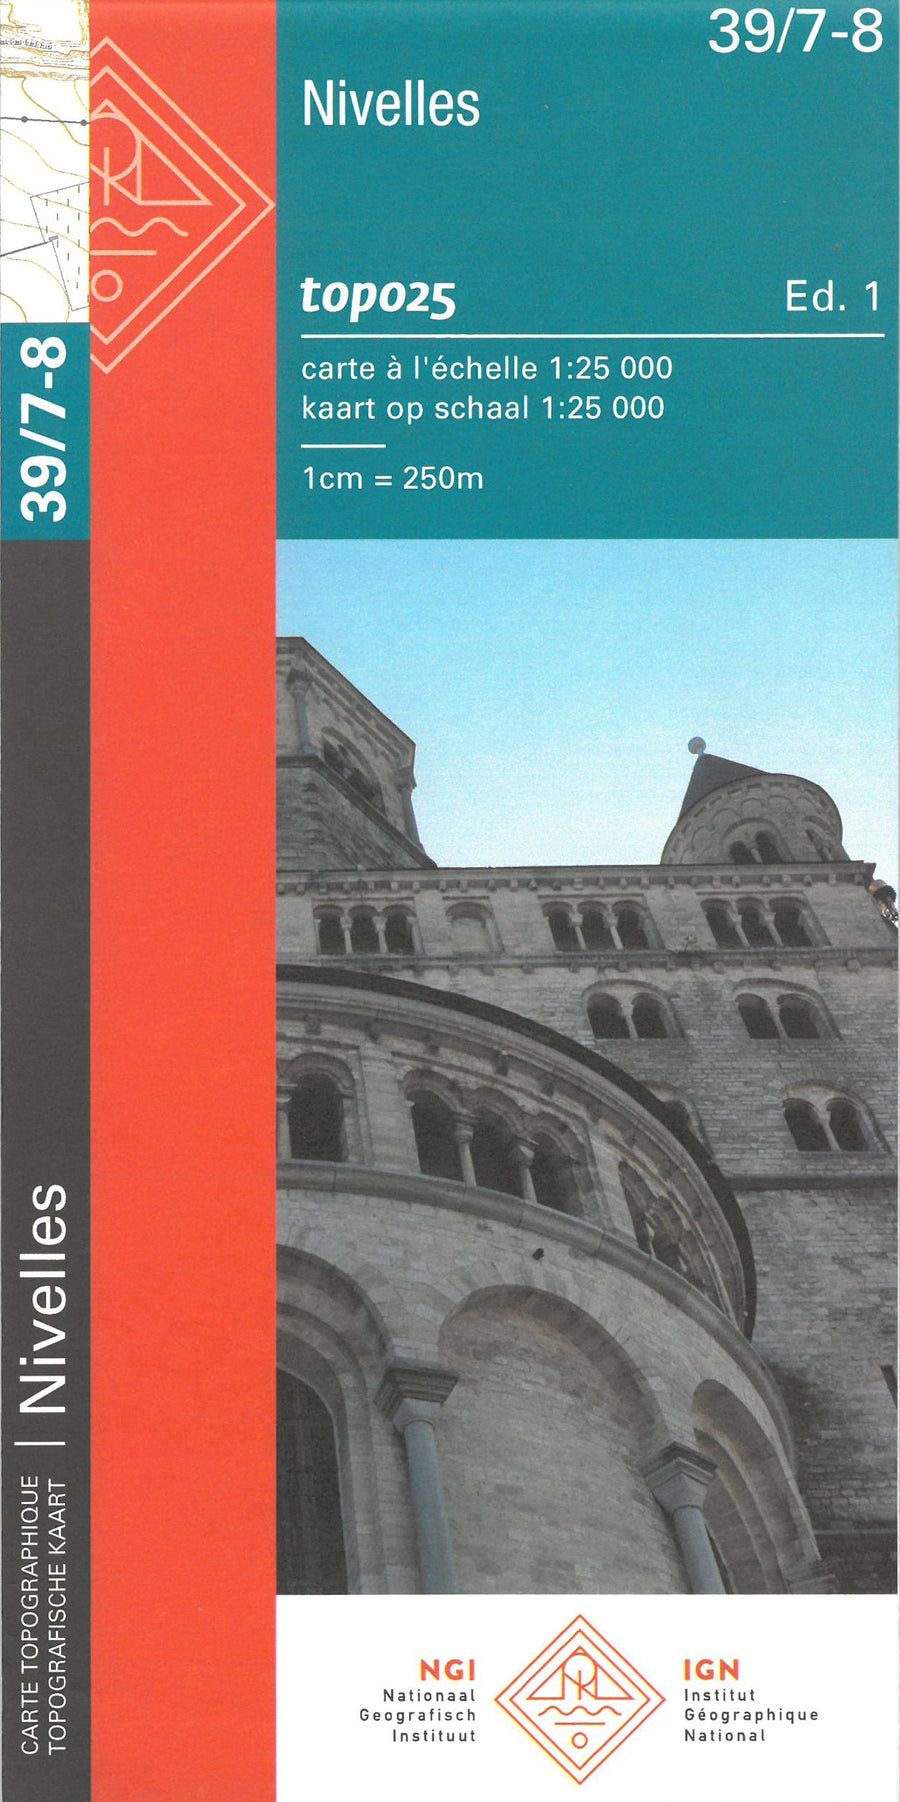 Carte topographique n° 39/7-8 - Nivelles (Belgique) | NGI topo 25 carte pliée IGN Belgique 